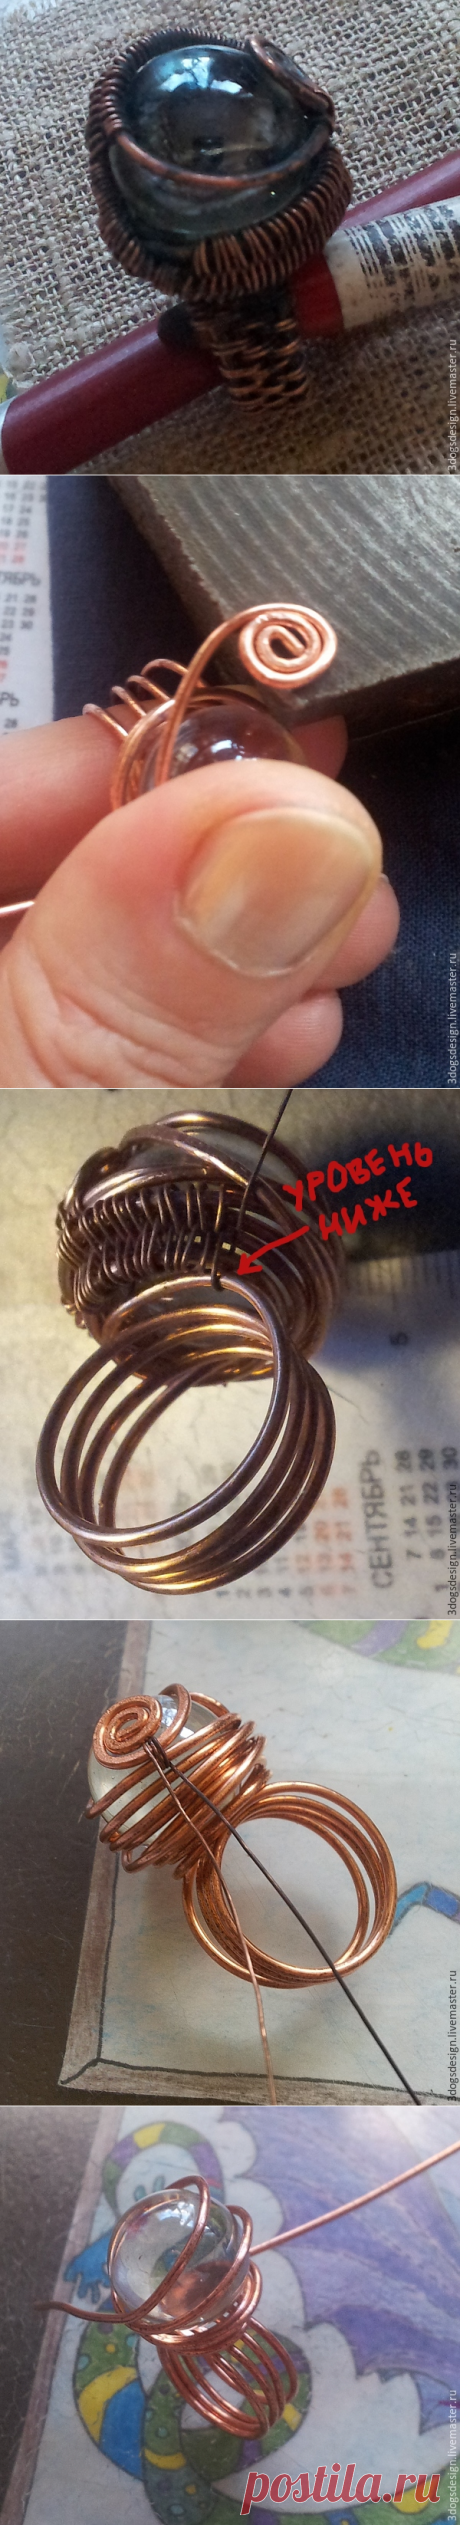 «Бюджетный брульянт», или Делаем кольцо со стеклянным шариком из медной проволоки - Ярмарка Мастеров - ручная работа, handmade